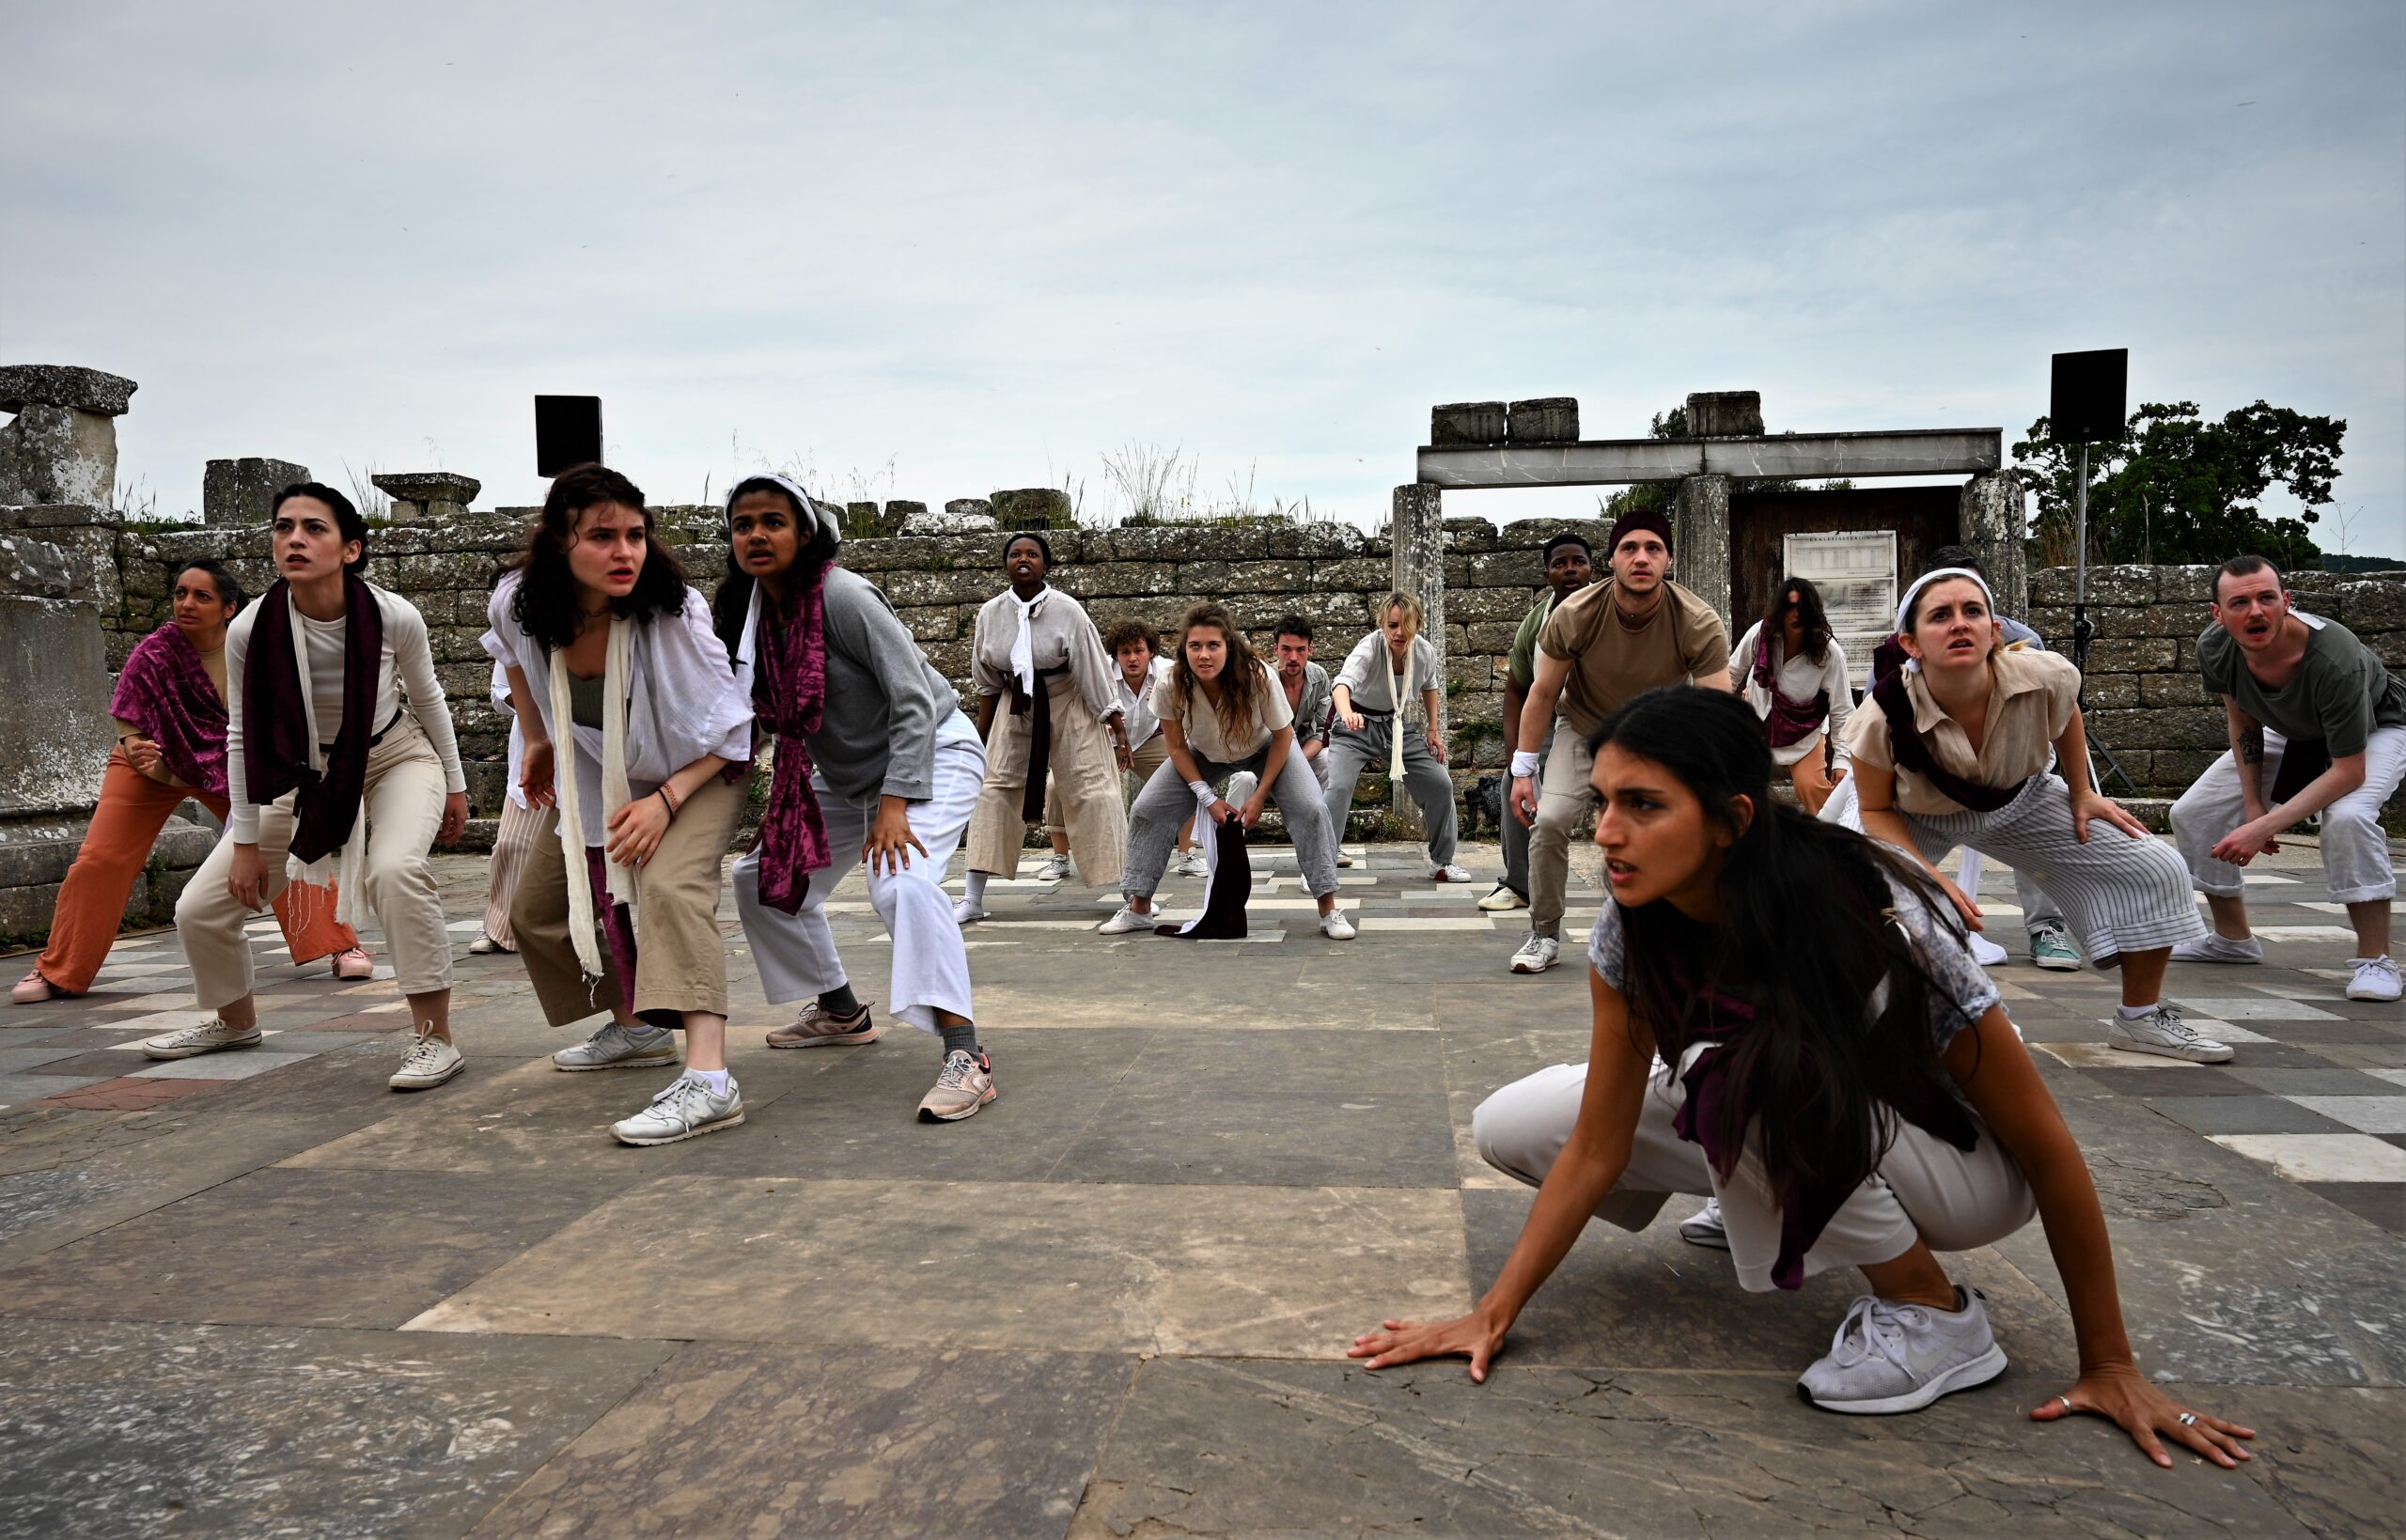 Η RADA σε ακόμα μία ξεχωριστή παράσταση στο Διεθνές Νεανικό Φεστιβάλ Αρχαίου Δράματος